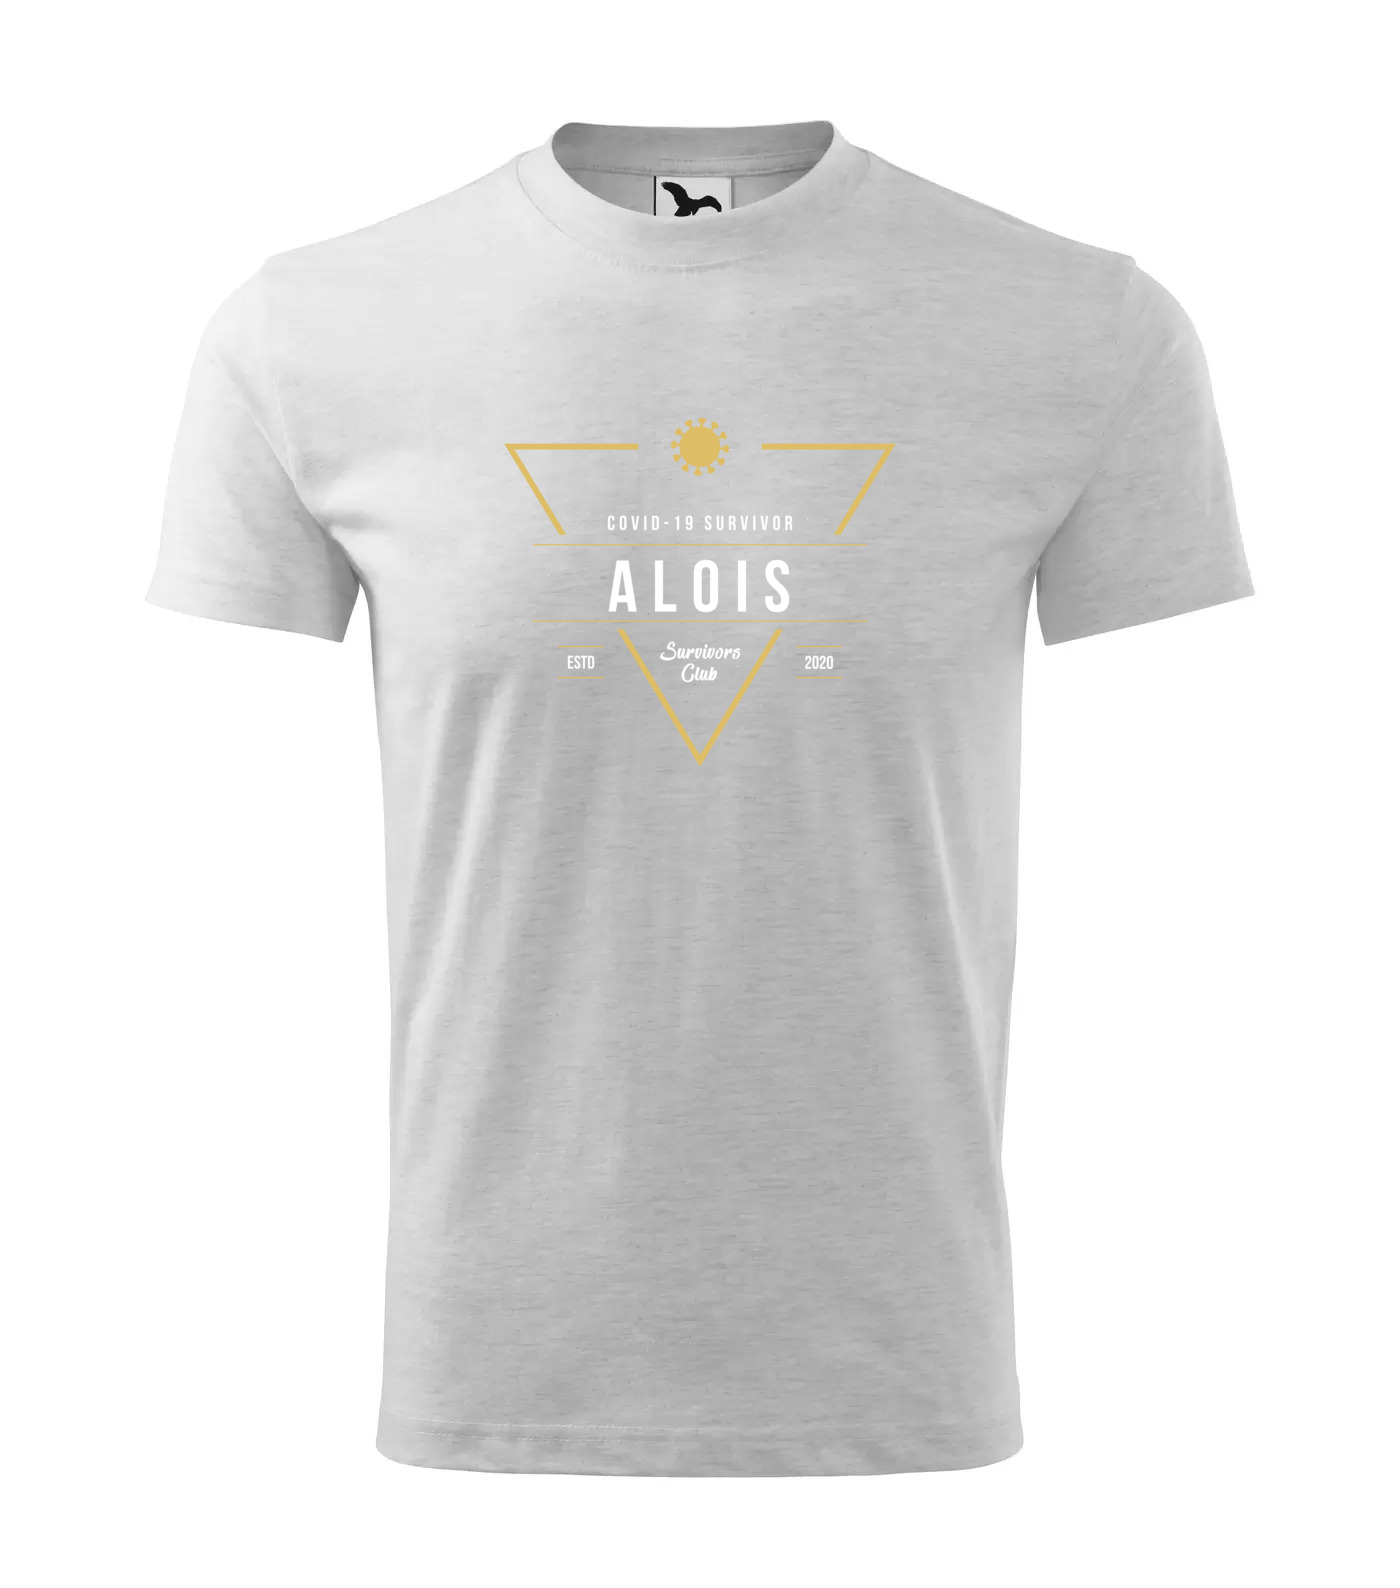 Tričko Survivor Club Alois